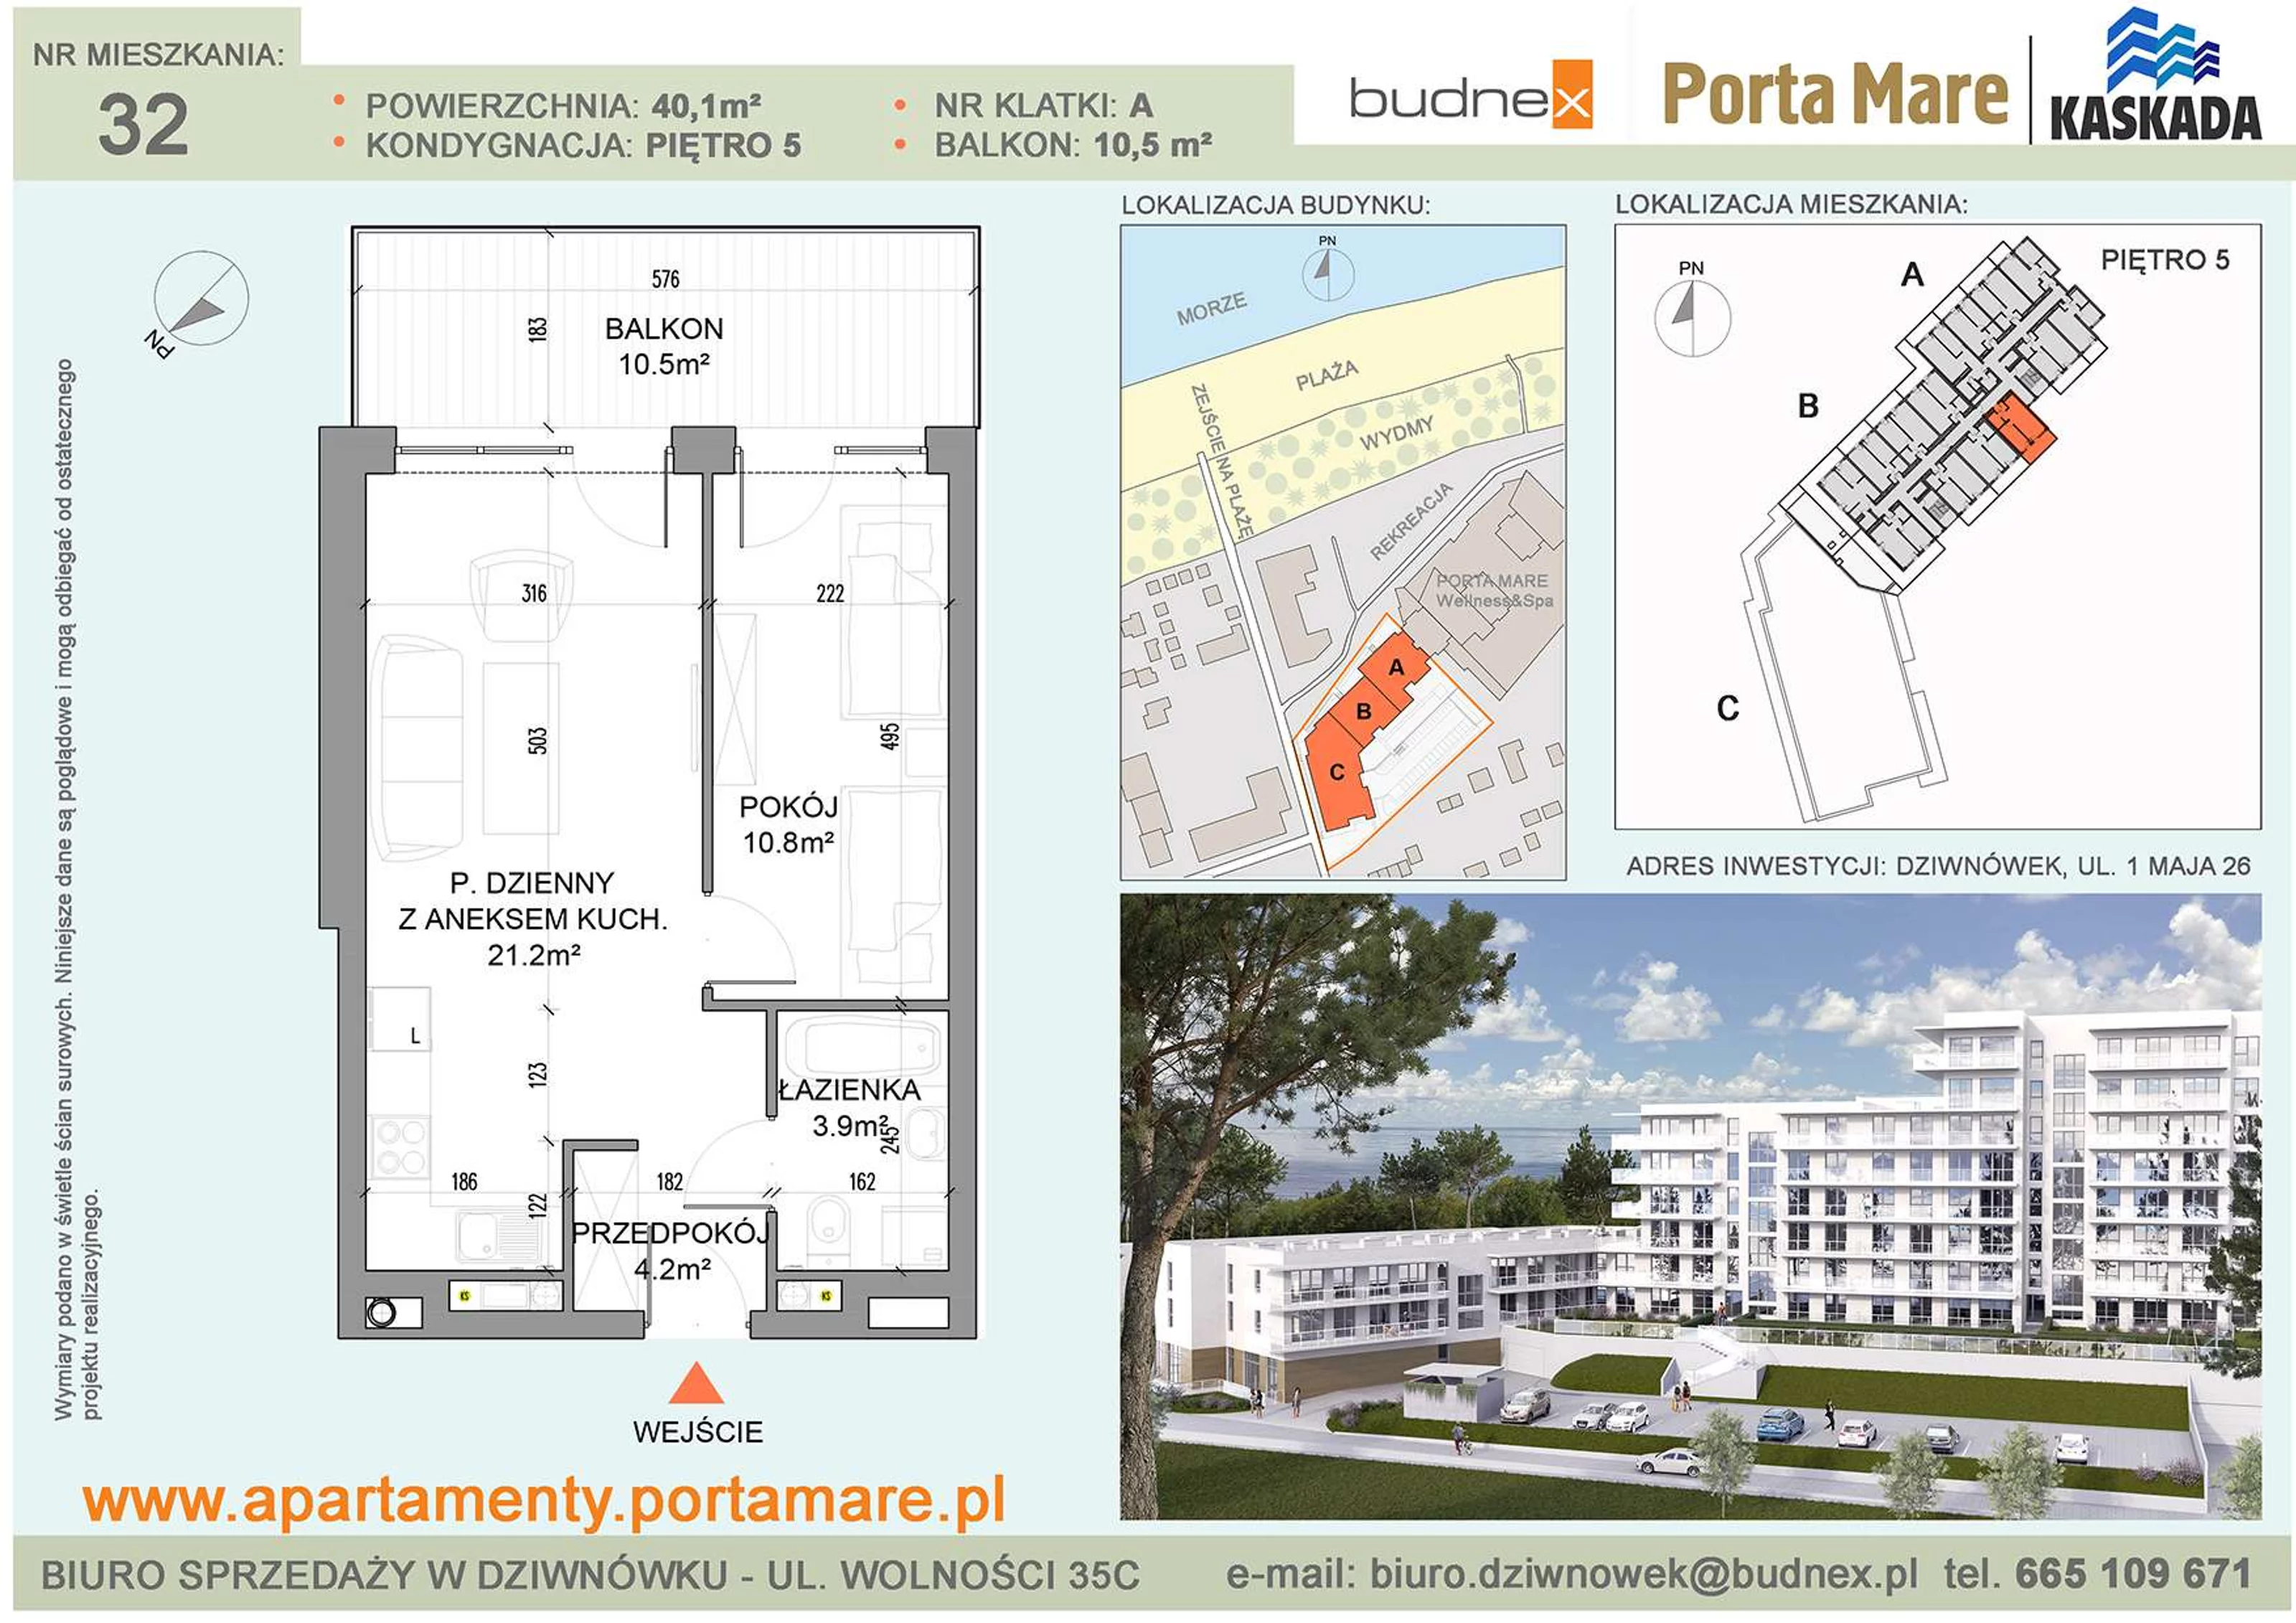 Mieszkanie 40,10 m², piętro 5, oferta nr A/M32, Porta Mare Kaskada, Dziwnówek, ul. 1 Maja 26